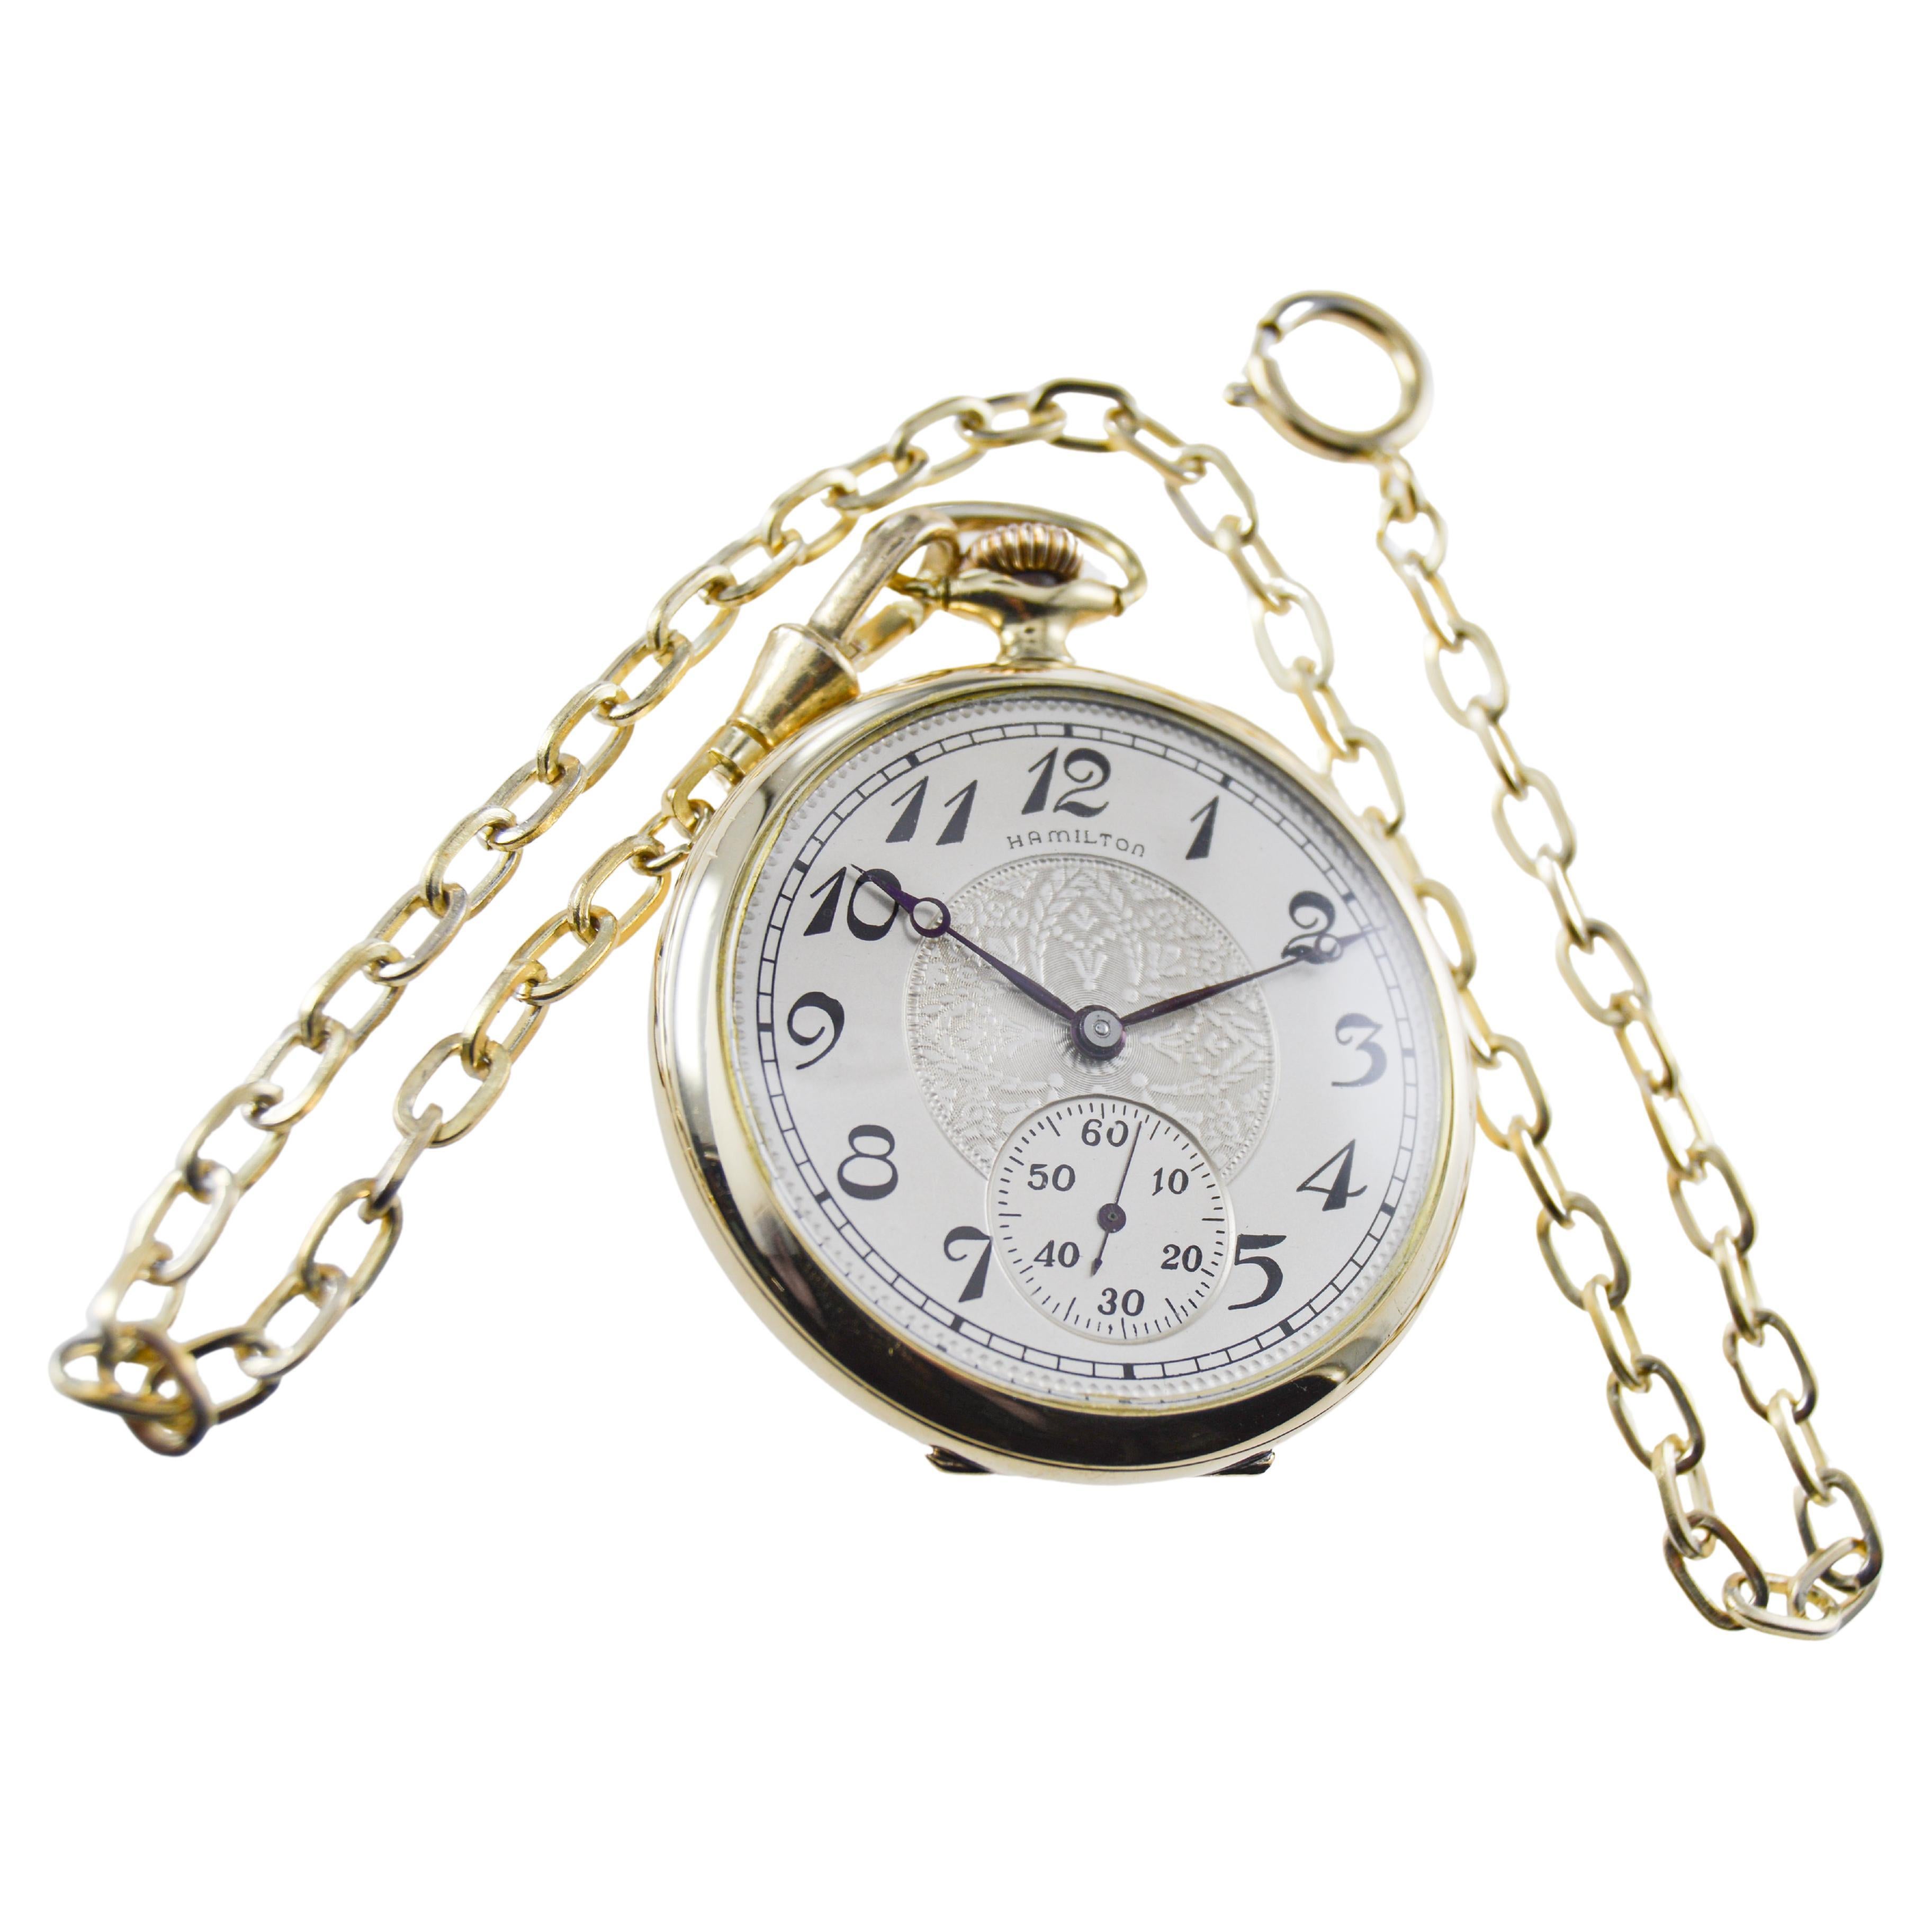 FABRIK / HAUS: Hamilton Watch Company
STIL / REFERENZ: Taschenuhr mit offenem Gesicht 
METALL / MATERIAL: Gelbgold gefüllt 
CIRCA / JAHR: 1917
ABMESSUNGEN / GRÖSSE: Durchmesser 45mm 
UHRWERK / KALIBER: Handaufzug / 17 Jewels / Kaliber